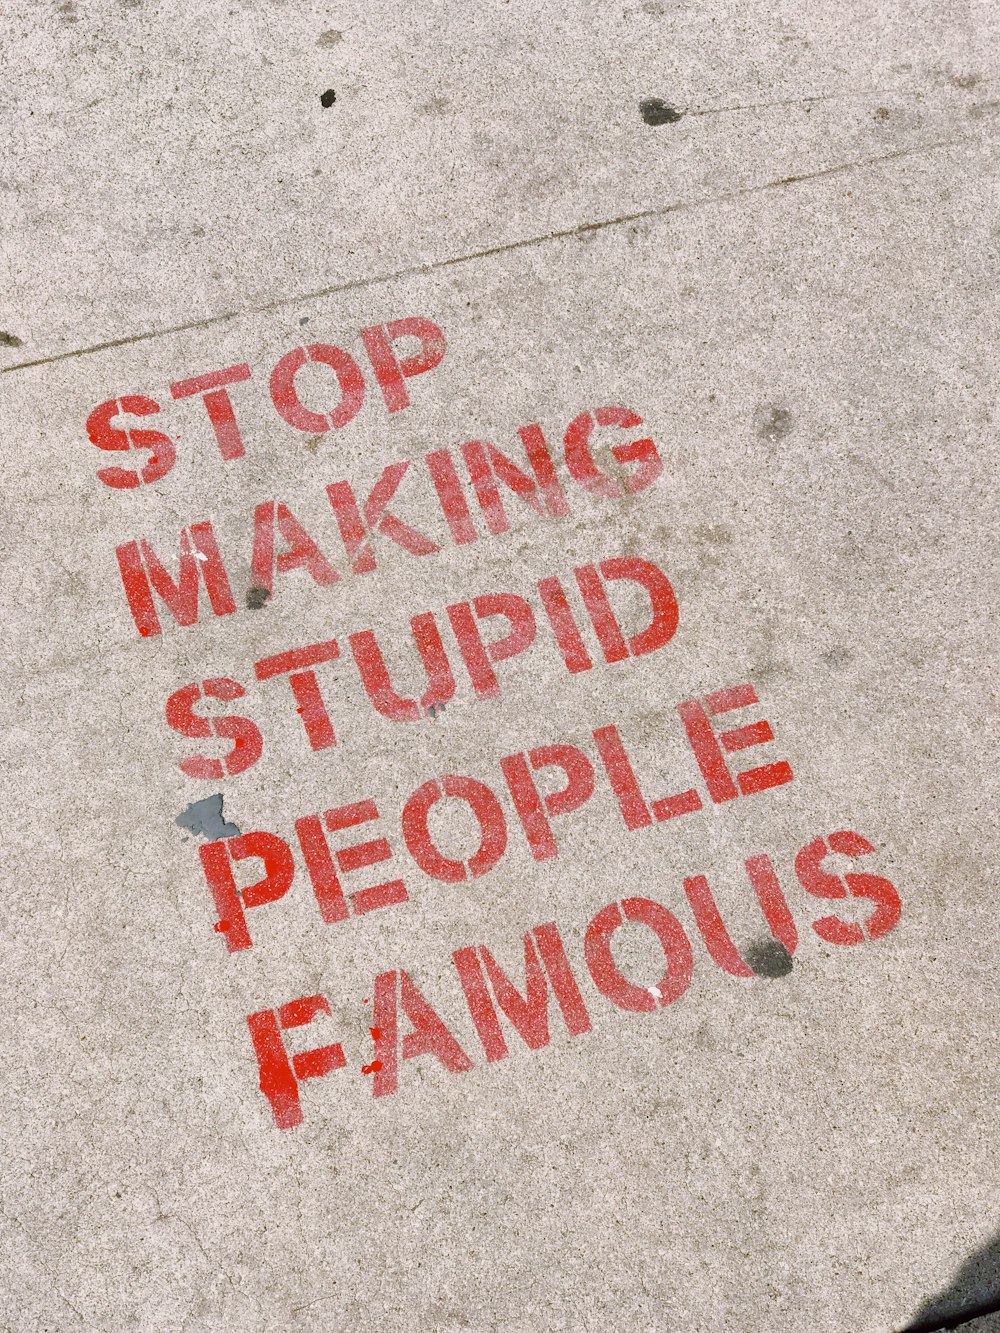 Smettila di rendere famosa la segnaletica delle persone stupide